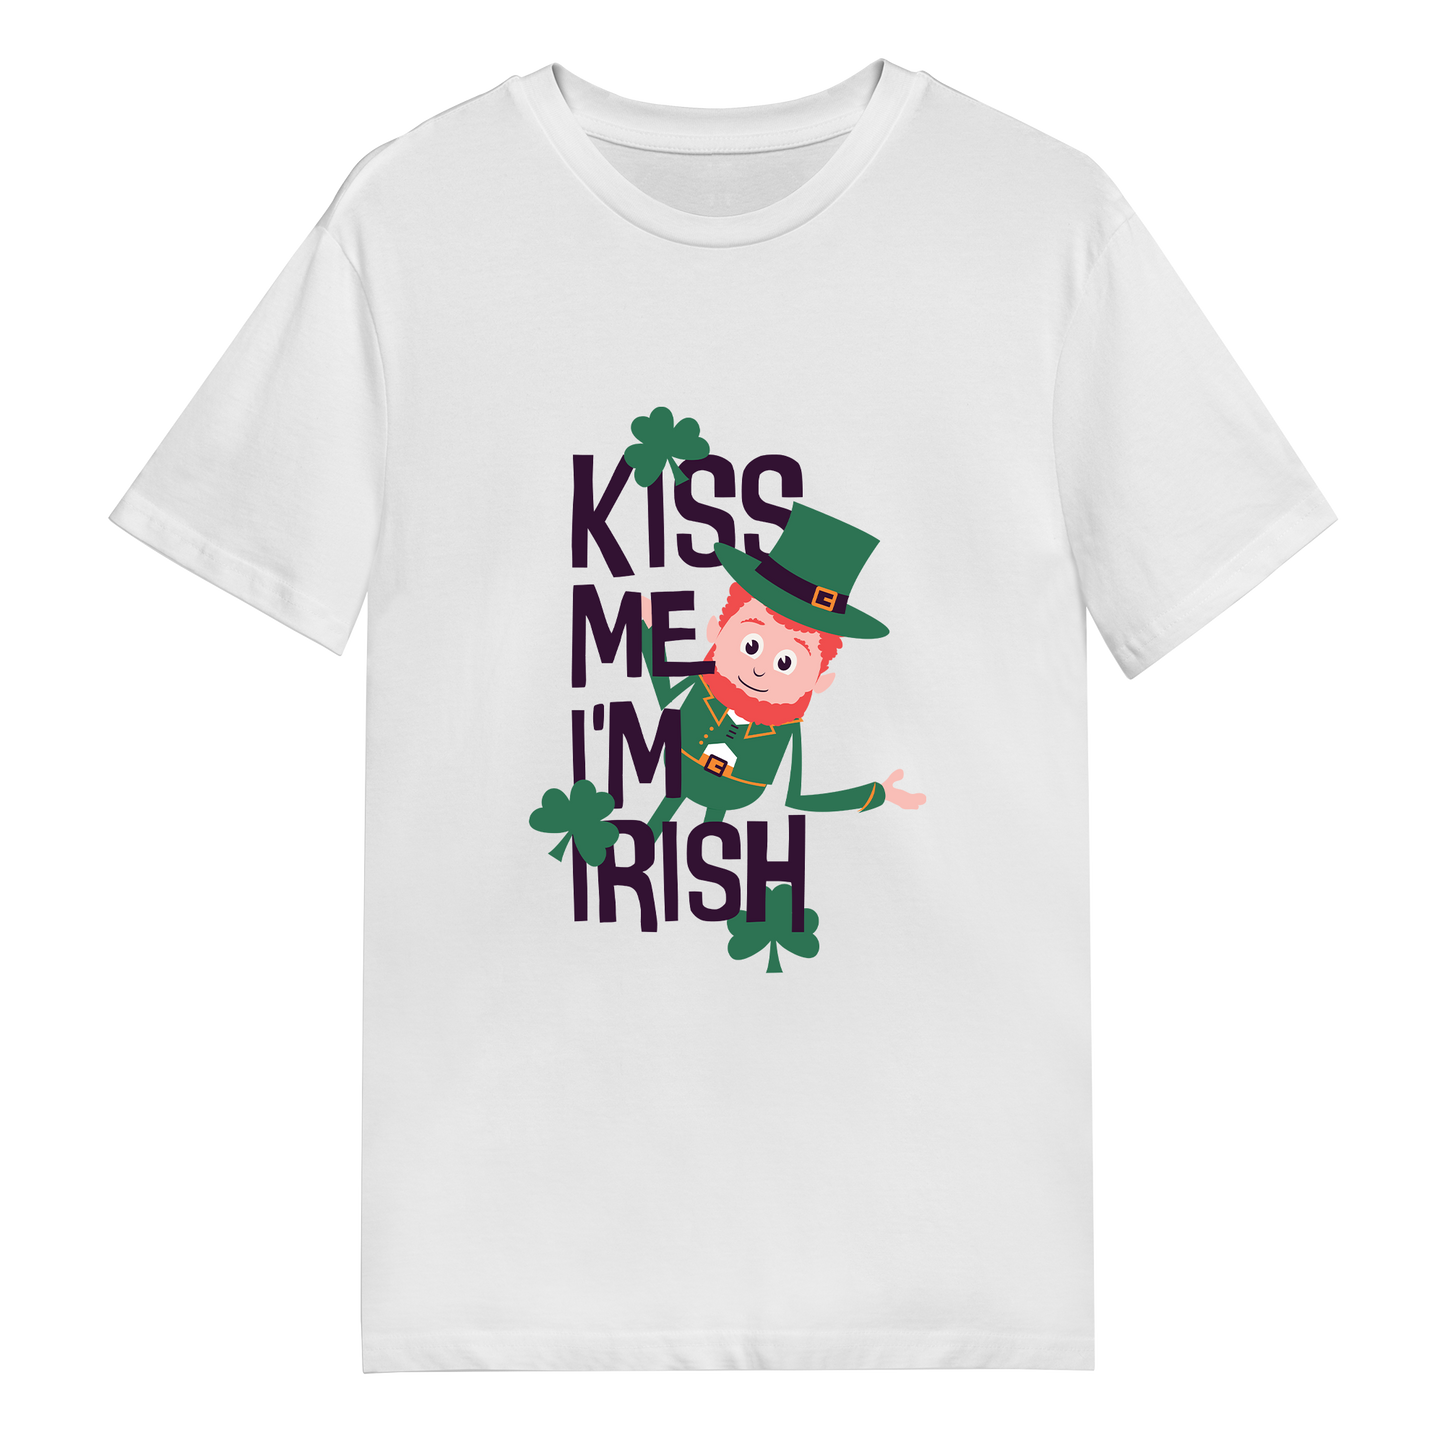 Men's T-Shirt - Kiss Me I'm Irish